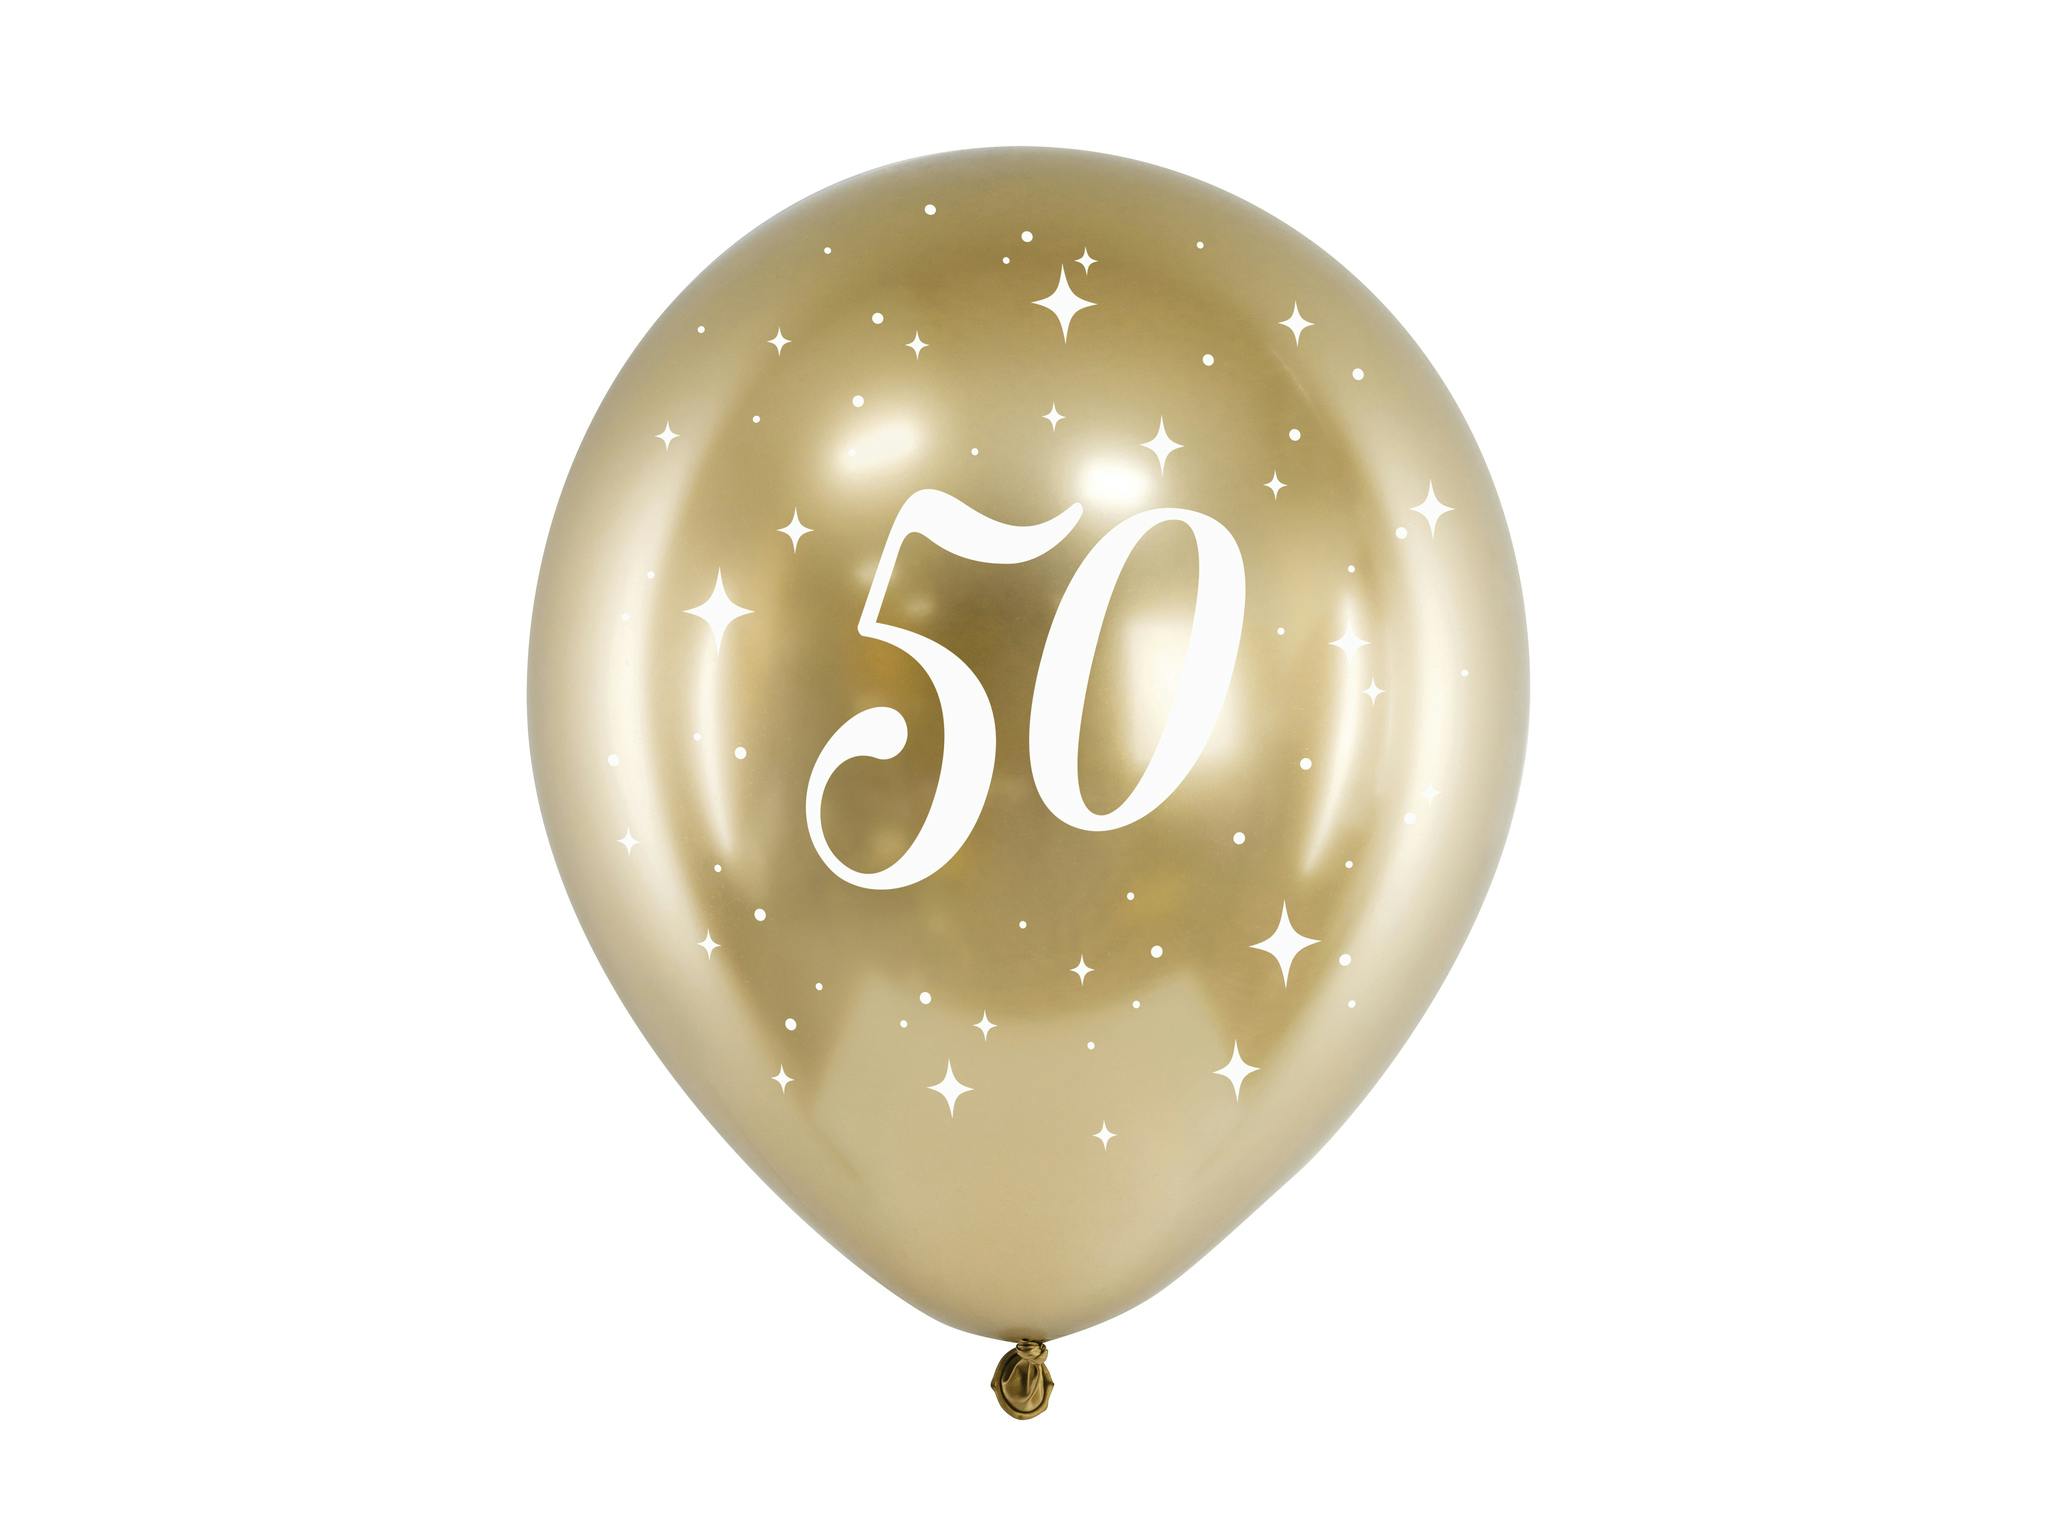 Guld ballong - 50 år